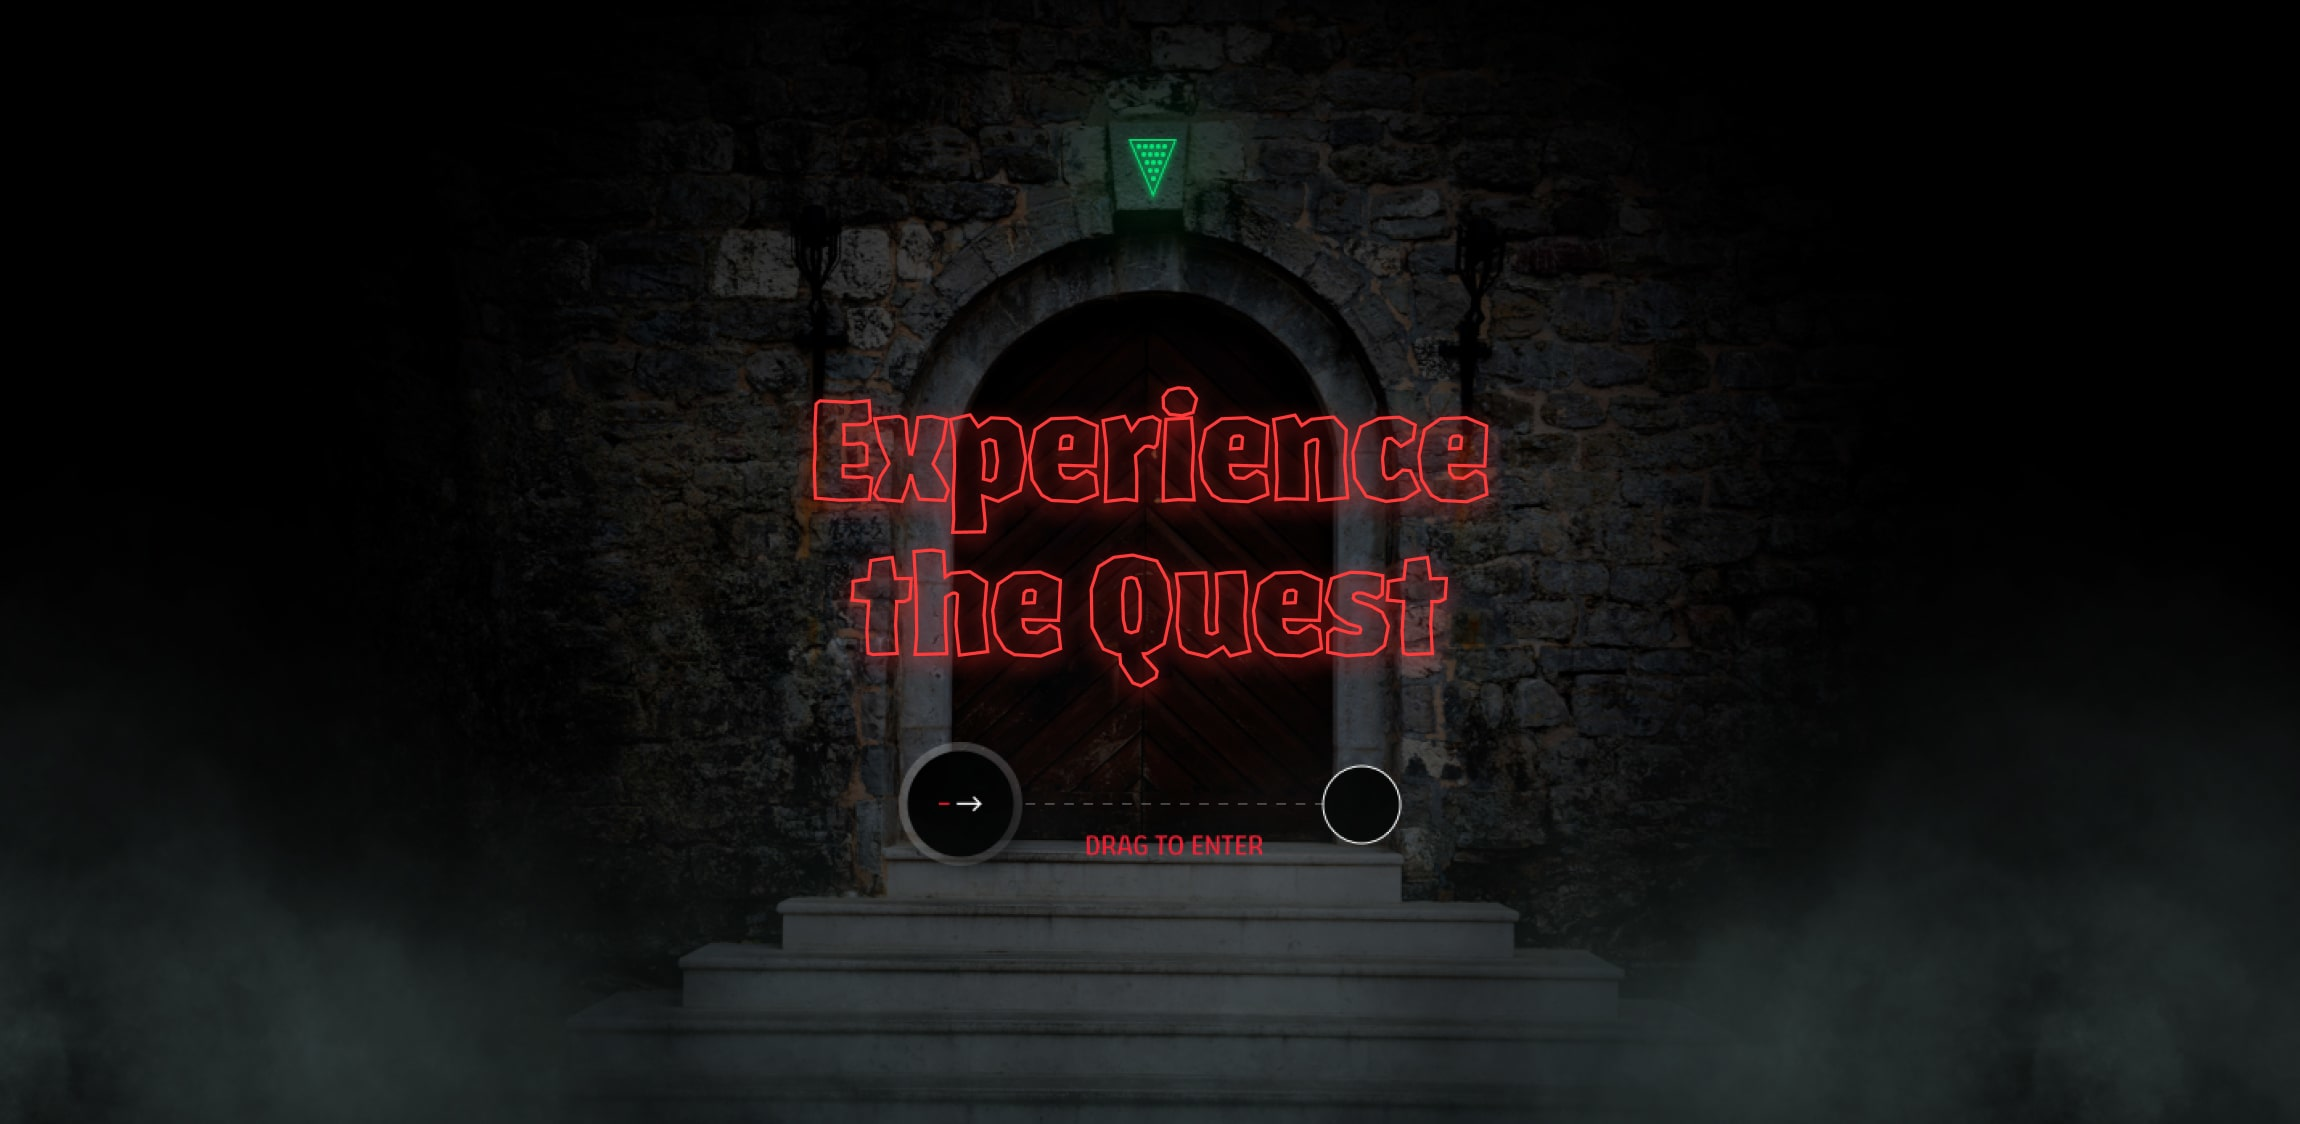 Een donkere achtergrond met op de voorgrond in het rood: 'Experience the Quest'